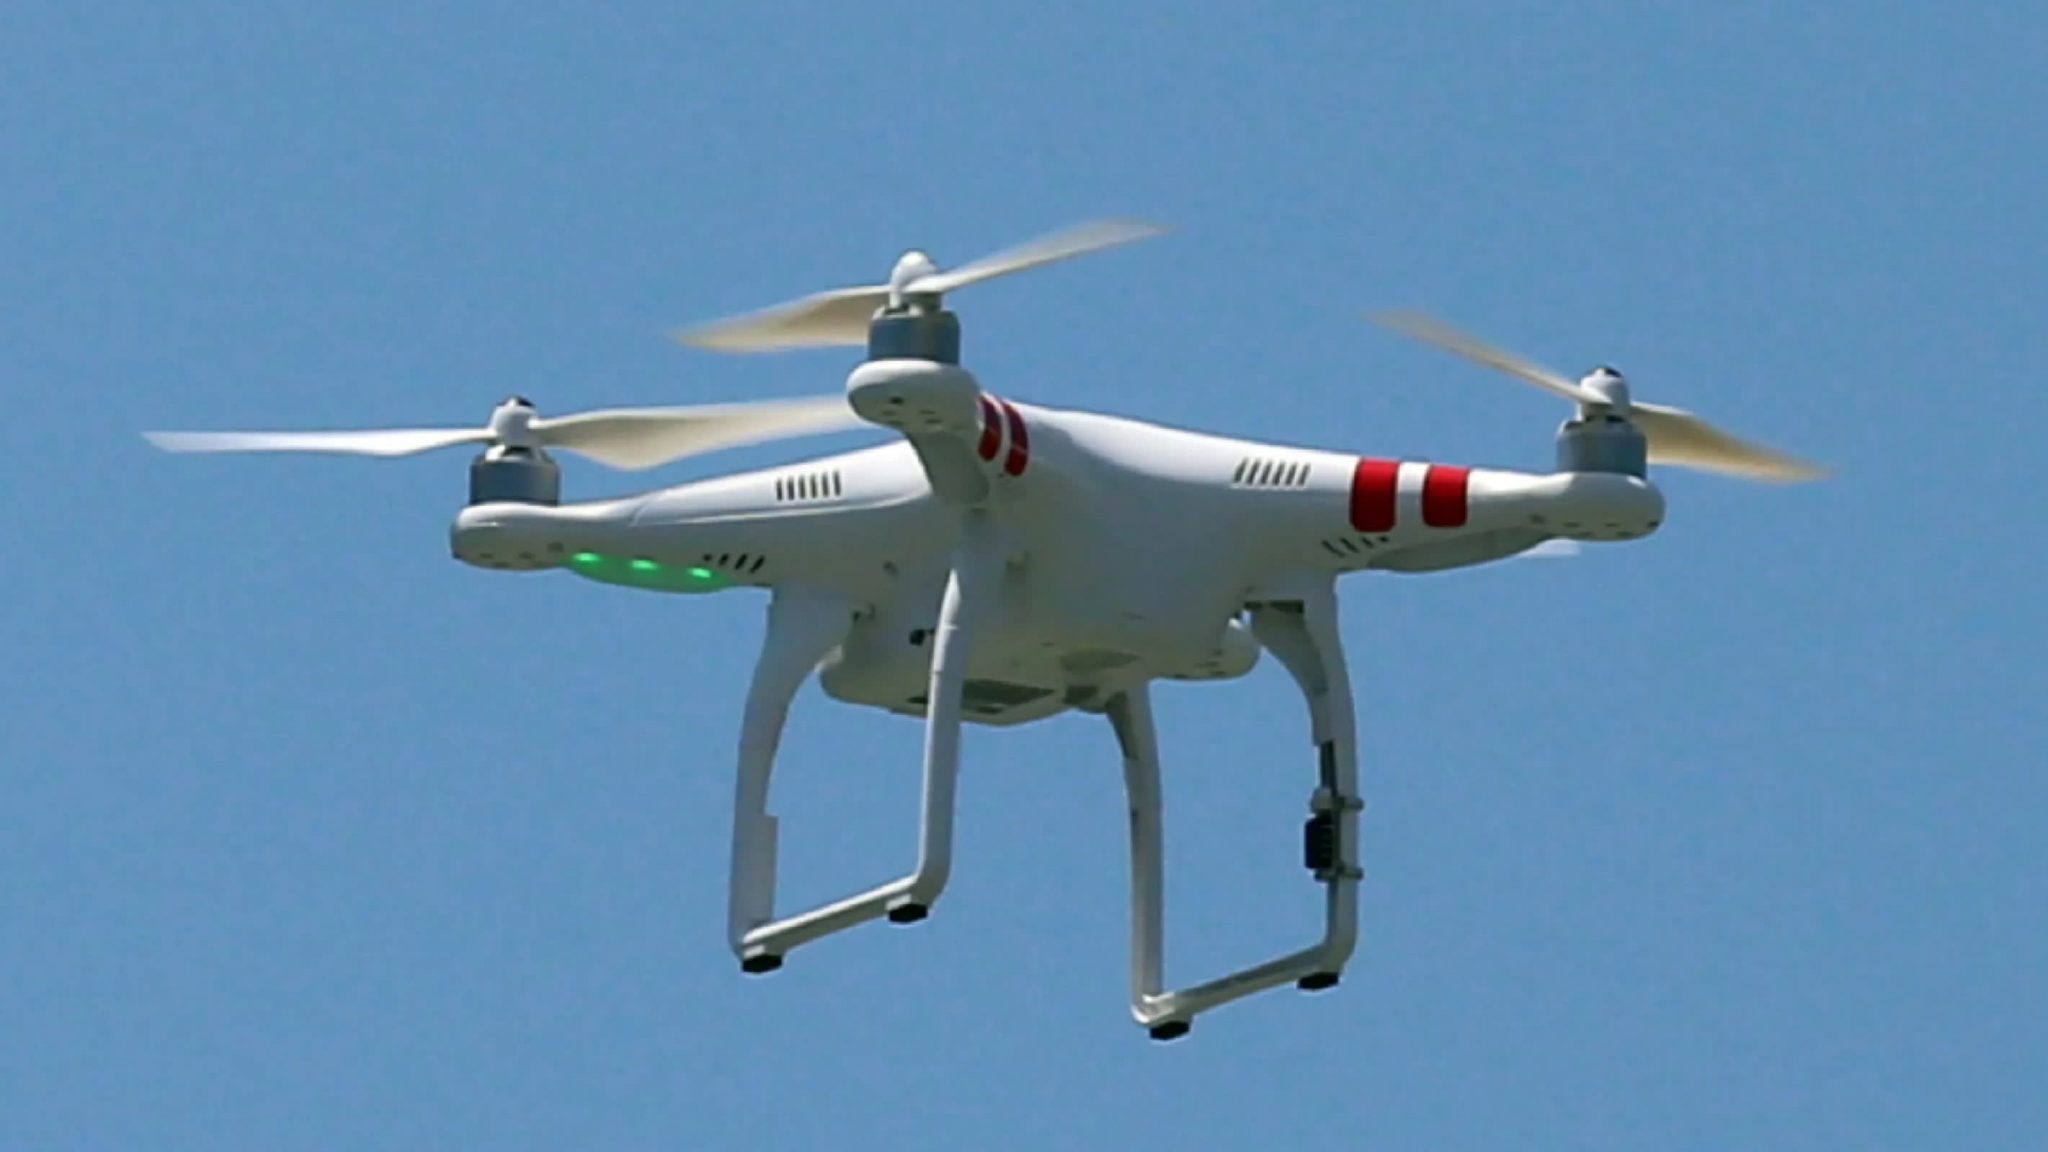 Lihat 7 drone terbaik untuk dibeli pada tahun 2020